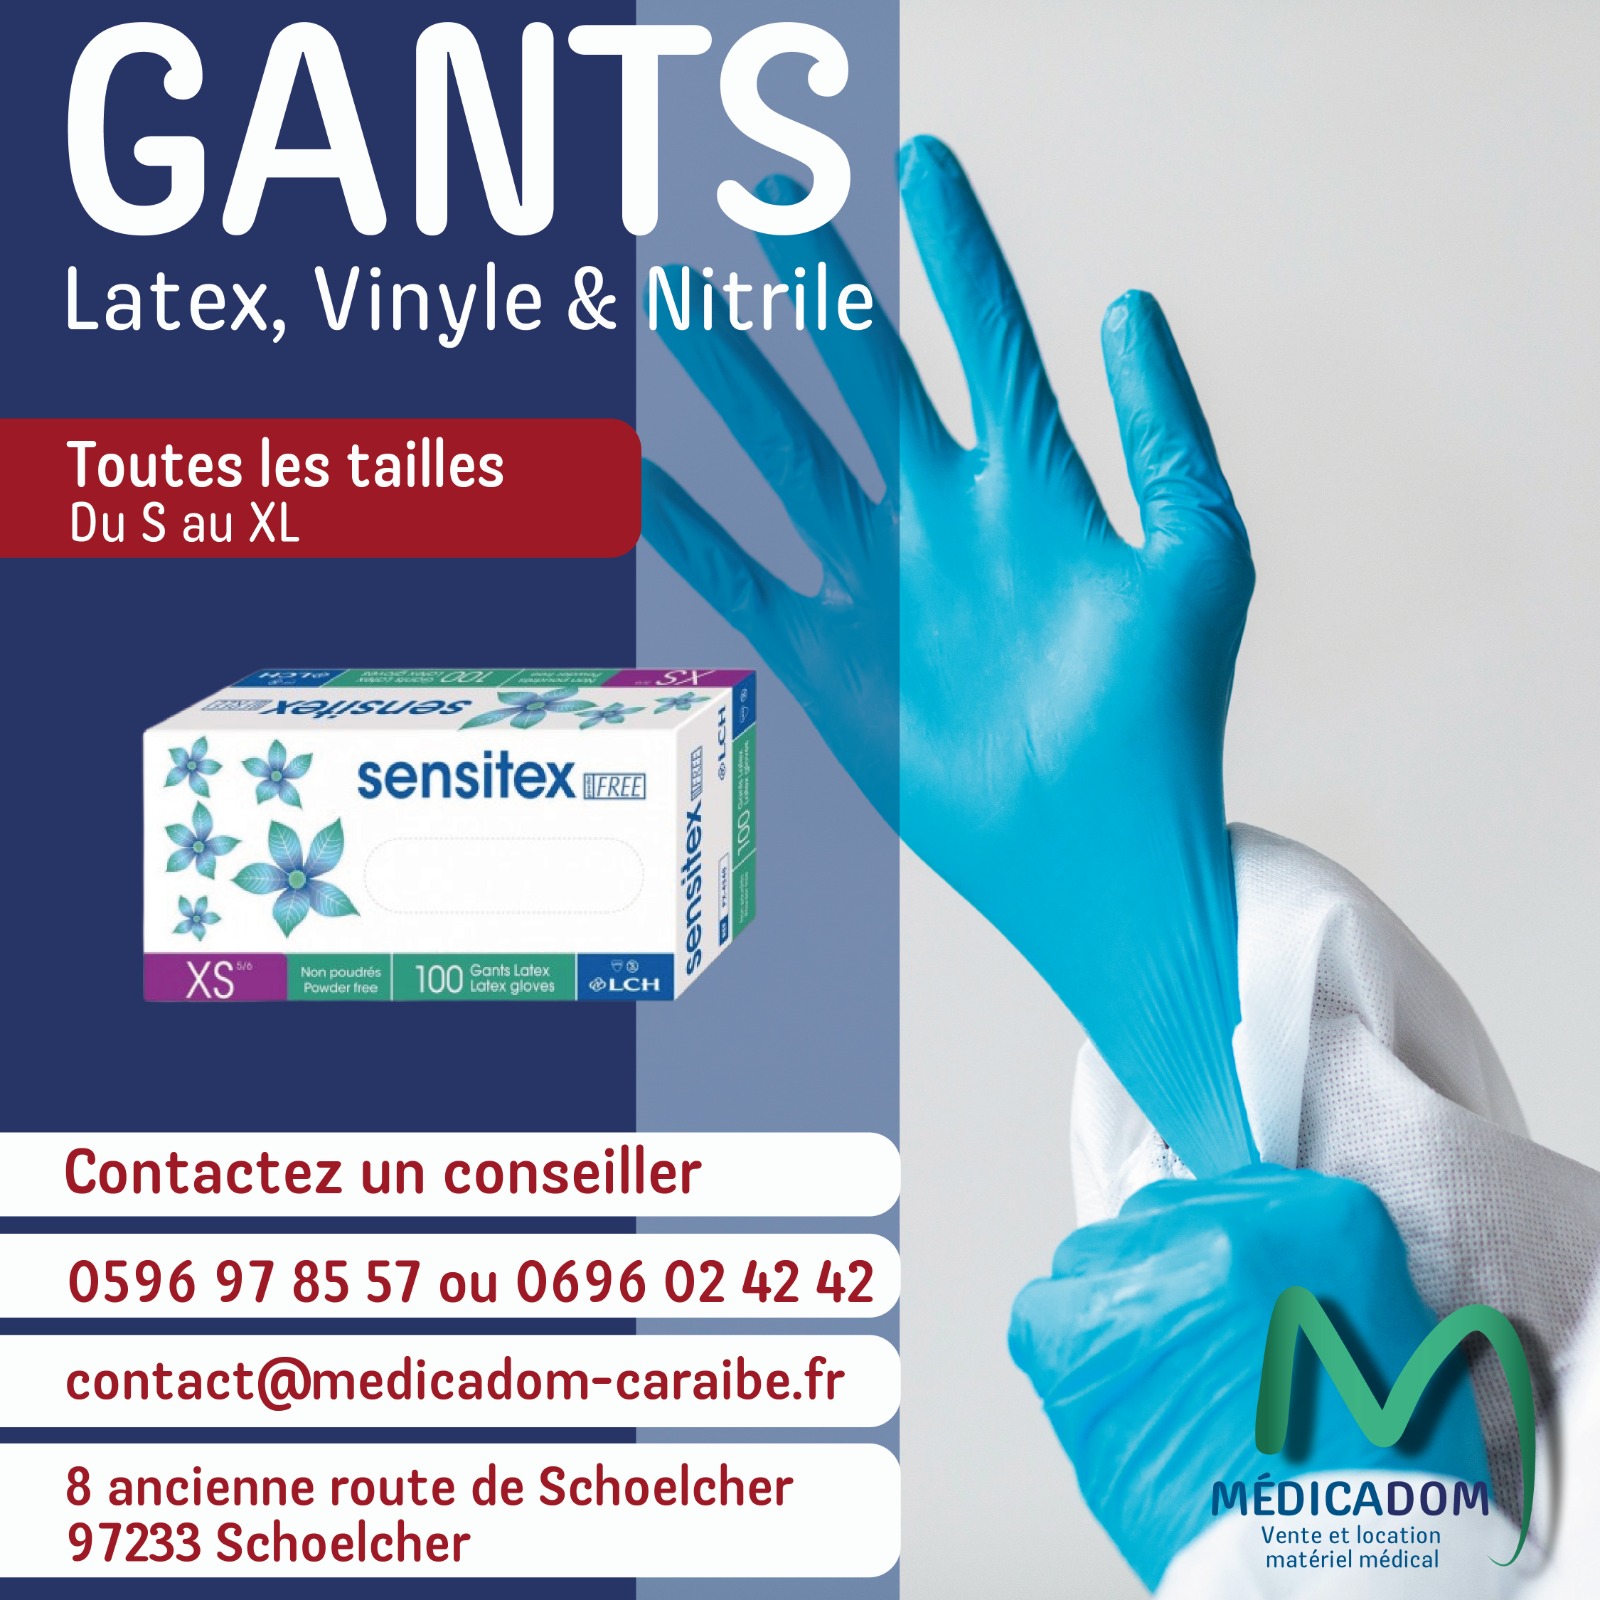 Gants latex , vinyle et nitrile 972 Martinique